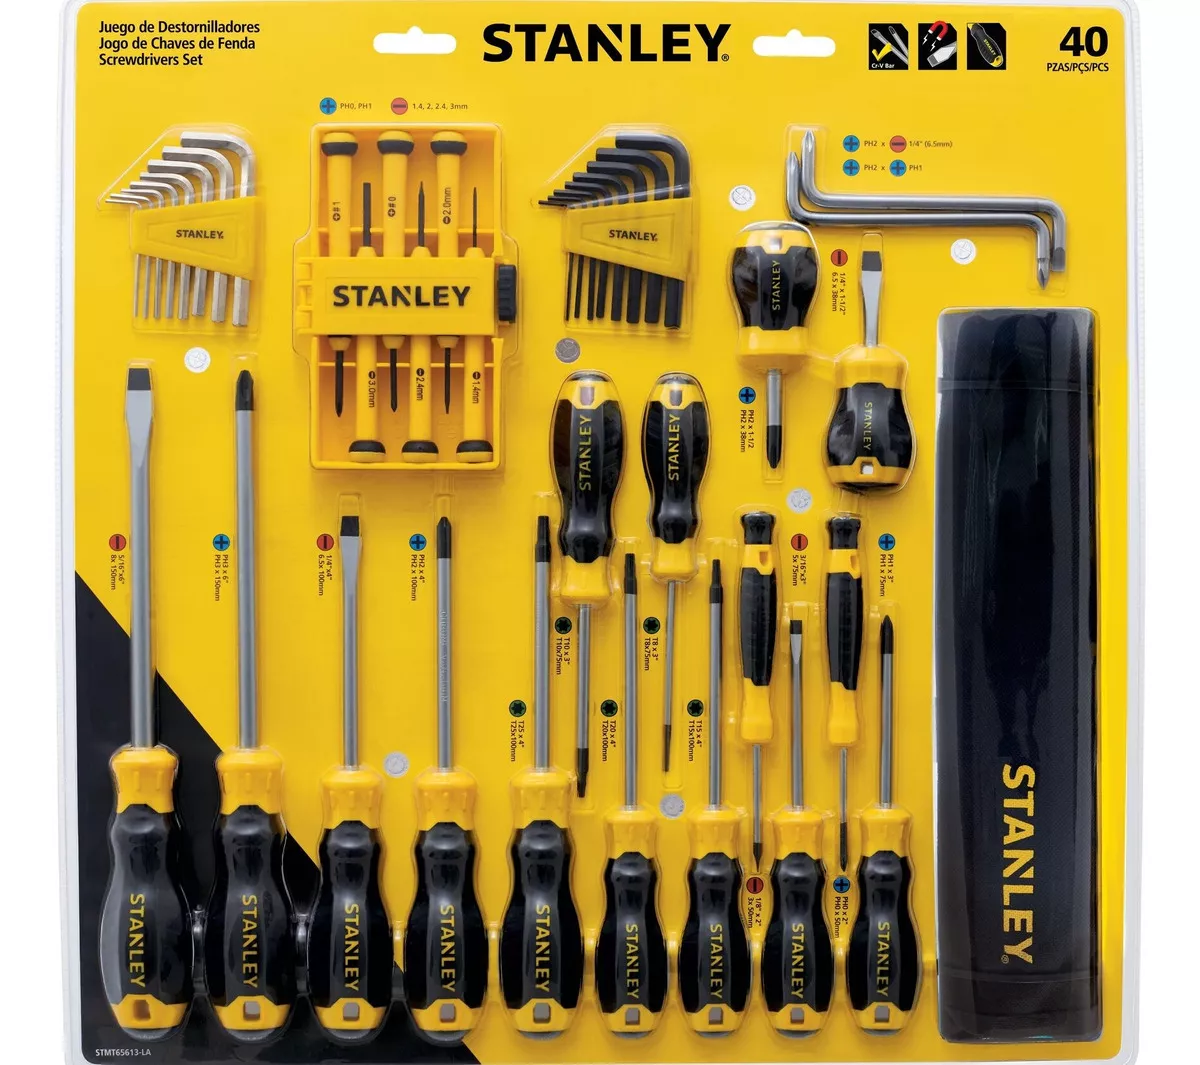 Segunda imagen para búsqueda de herramientas stanley